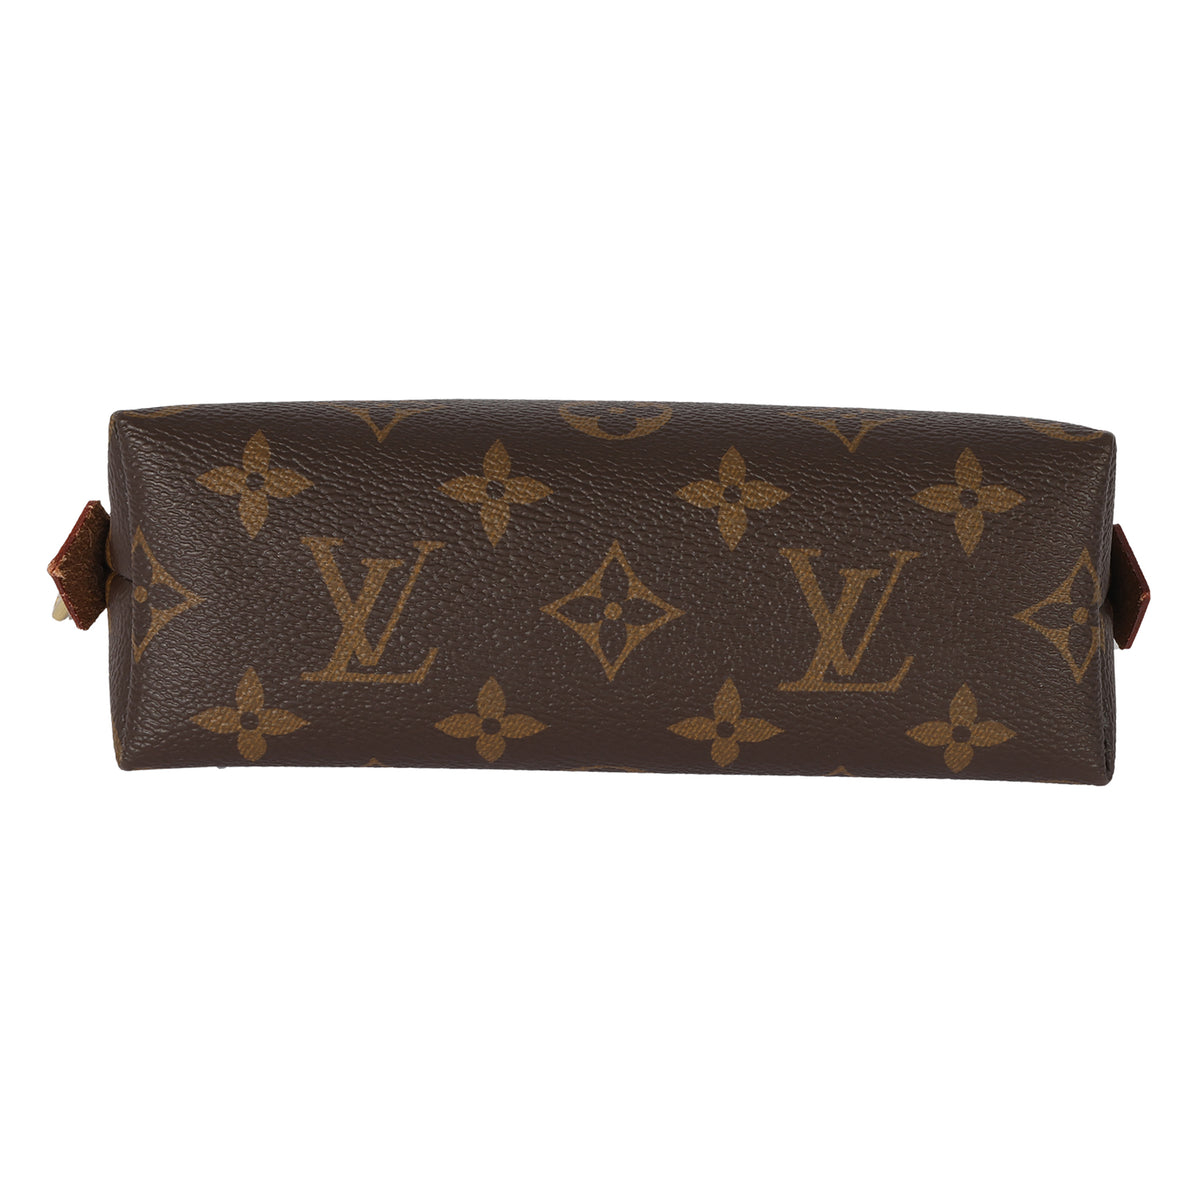 Louis Vuitton Monogram Canvas Cosmetic Pouch, myGemma